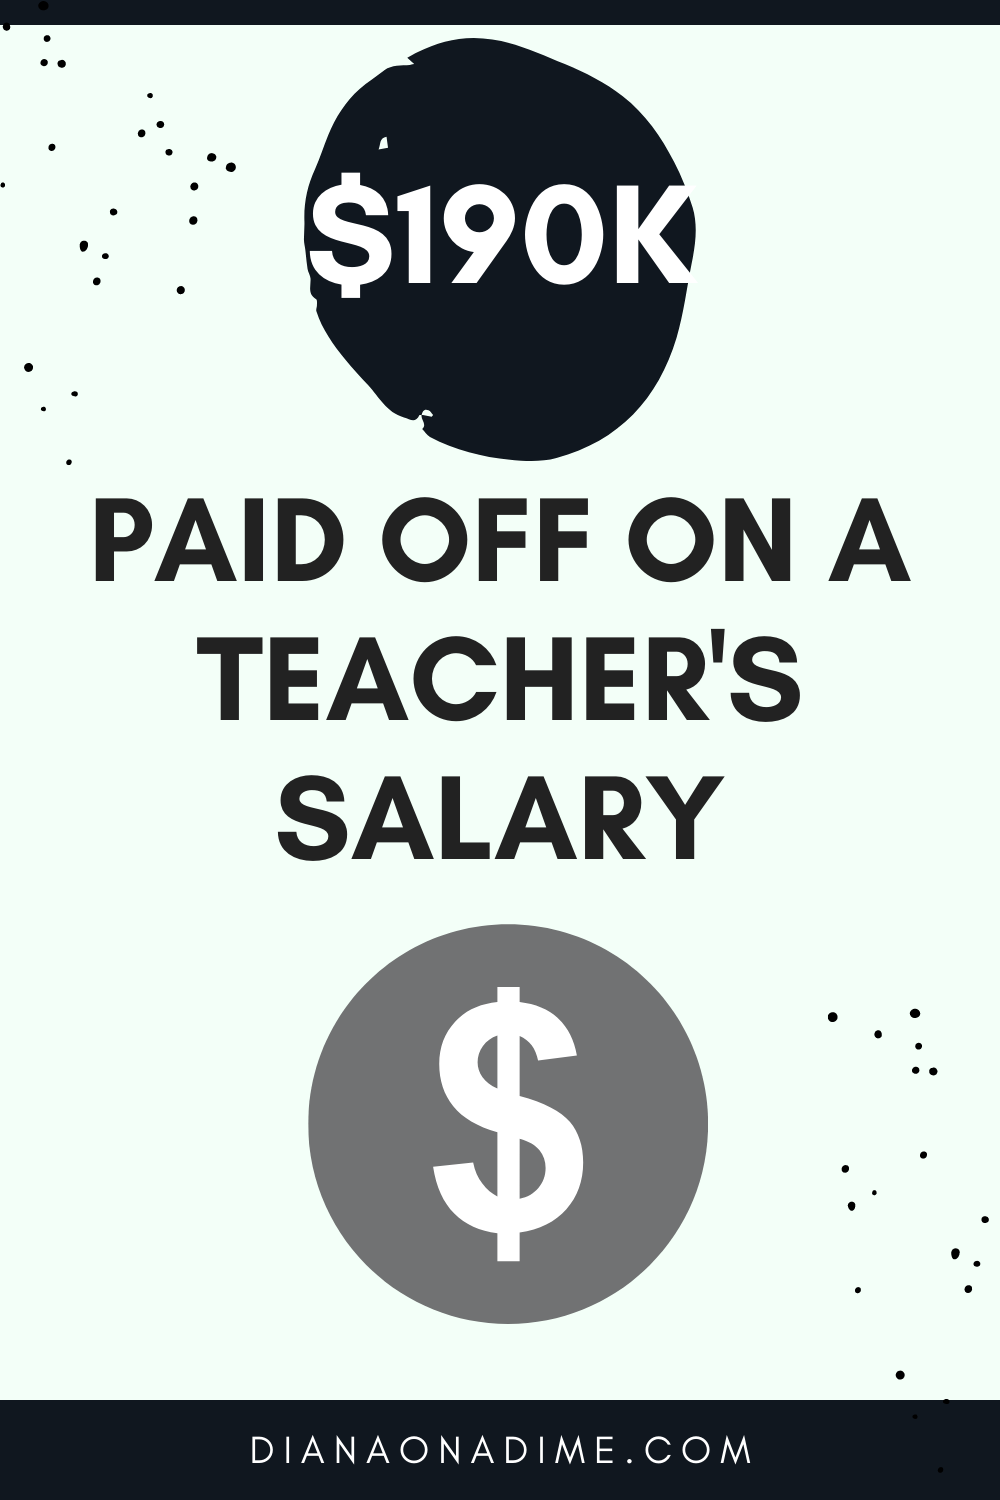 190k-Paid-Off-on-a-Teachers-Salary